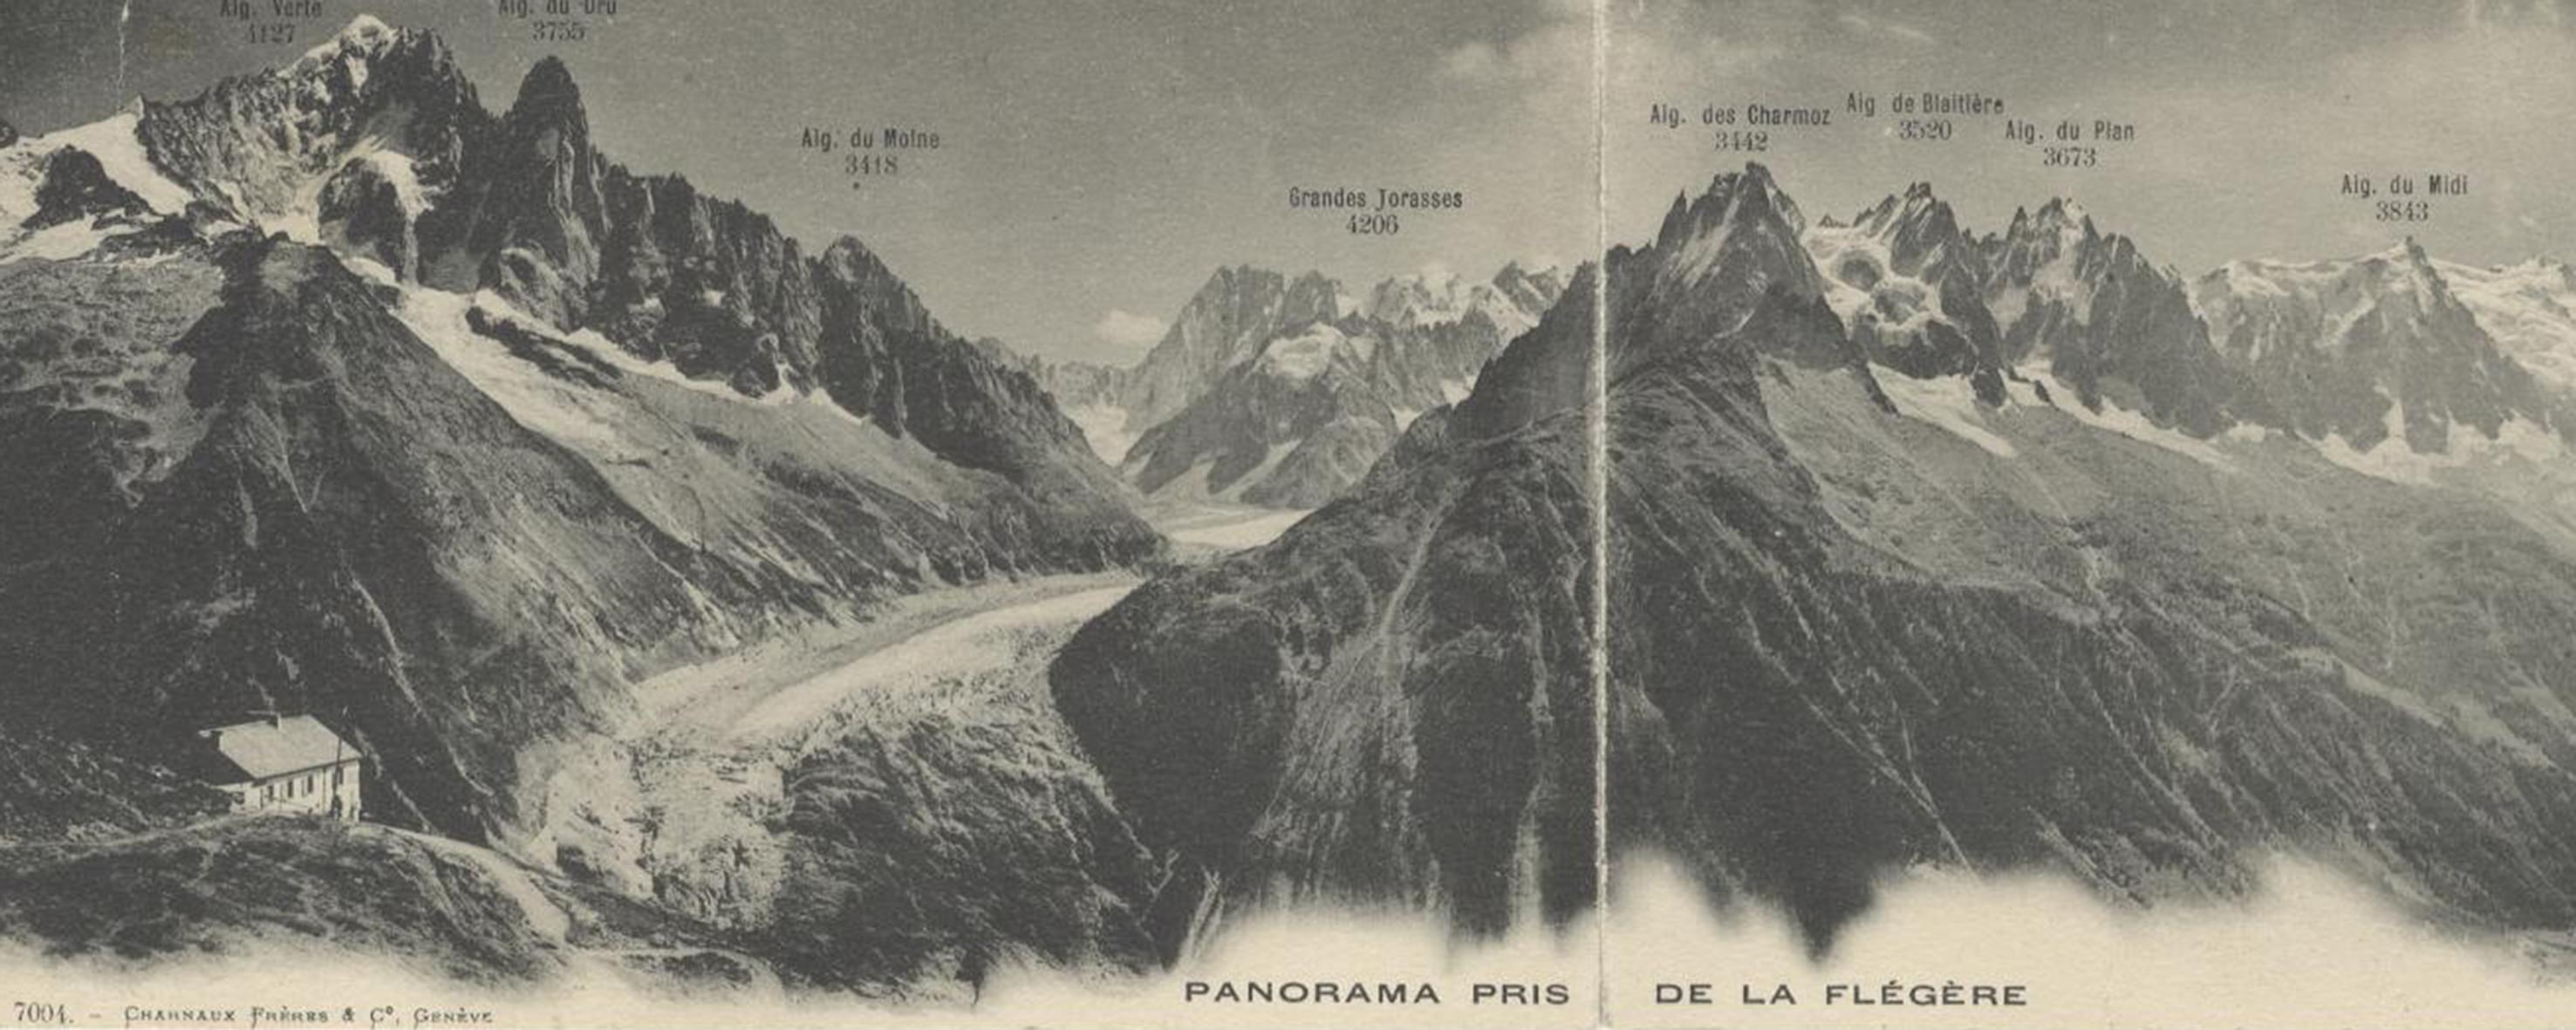 1930-1940 - sans Panorama pris de la Flegere - Don Bernard Giusto